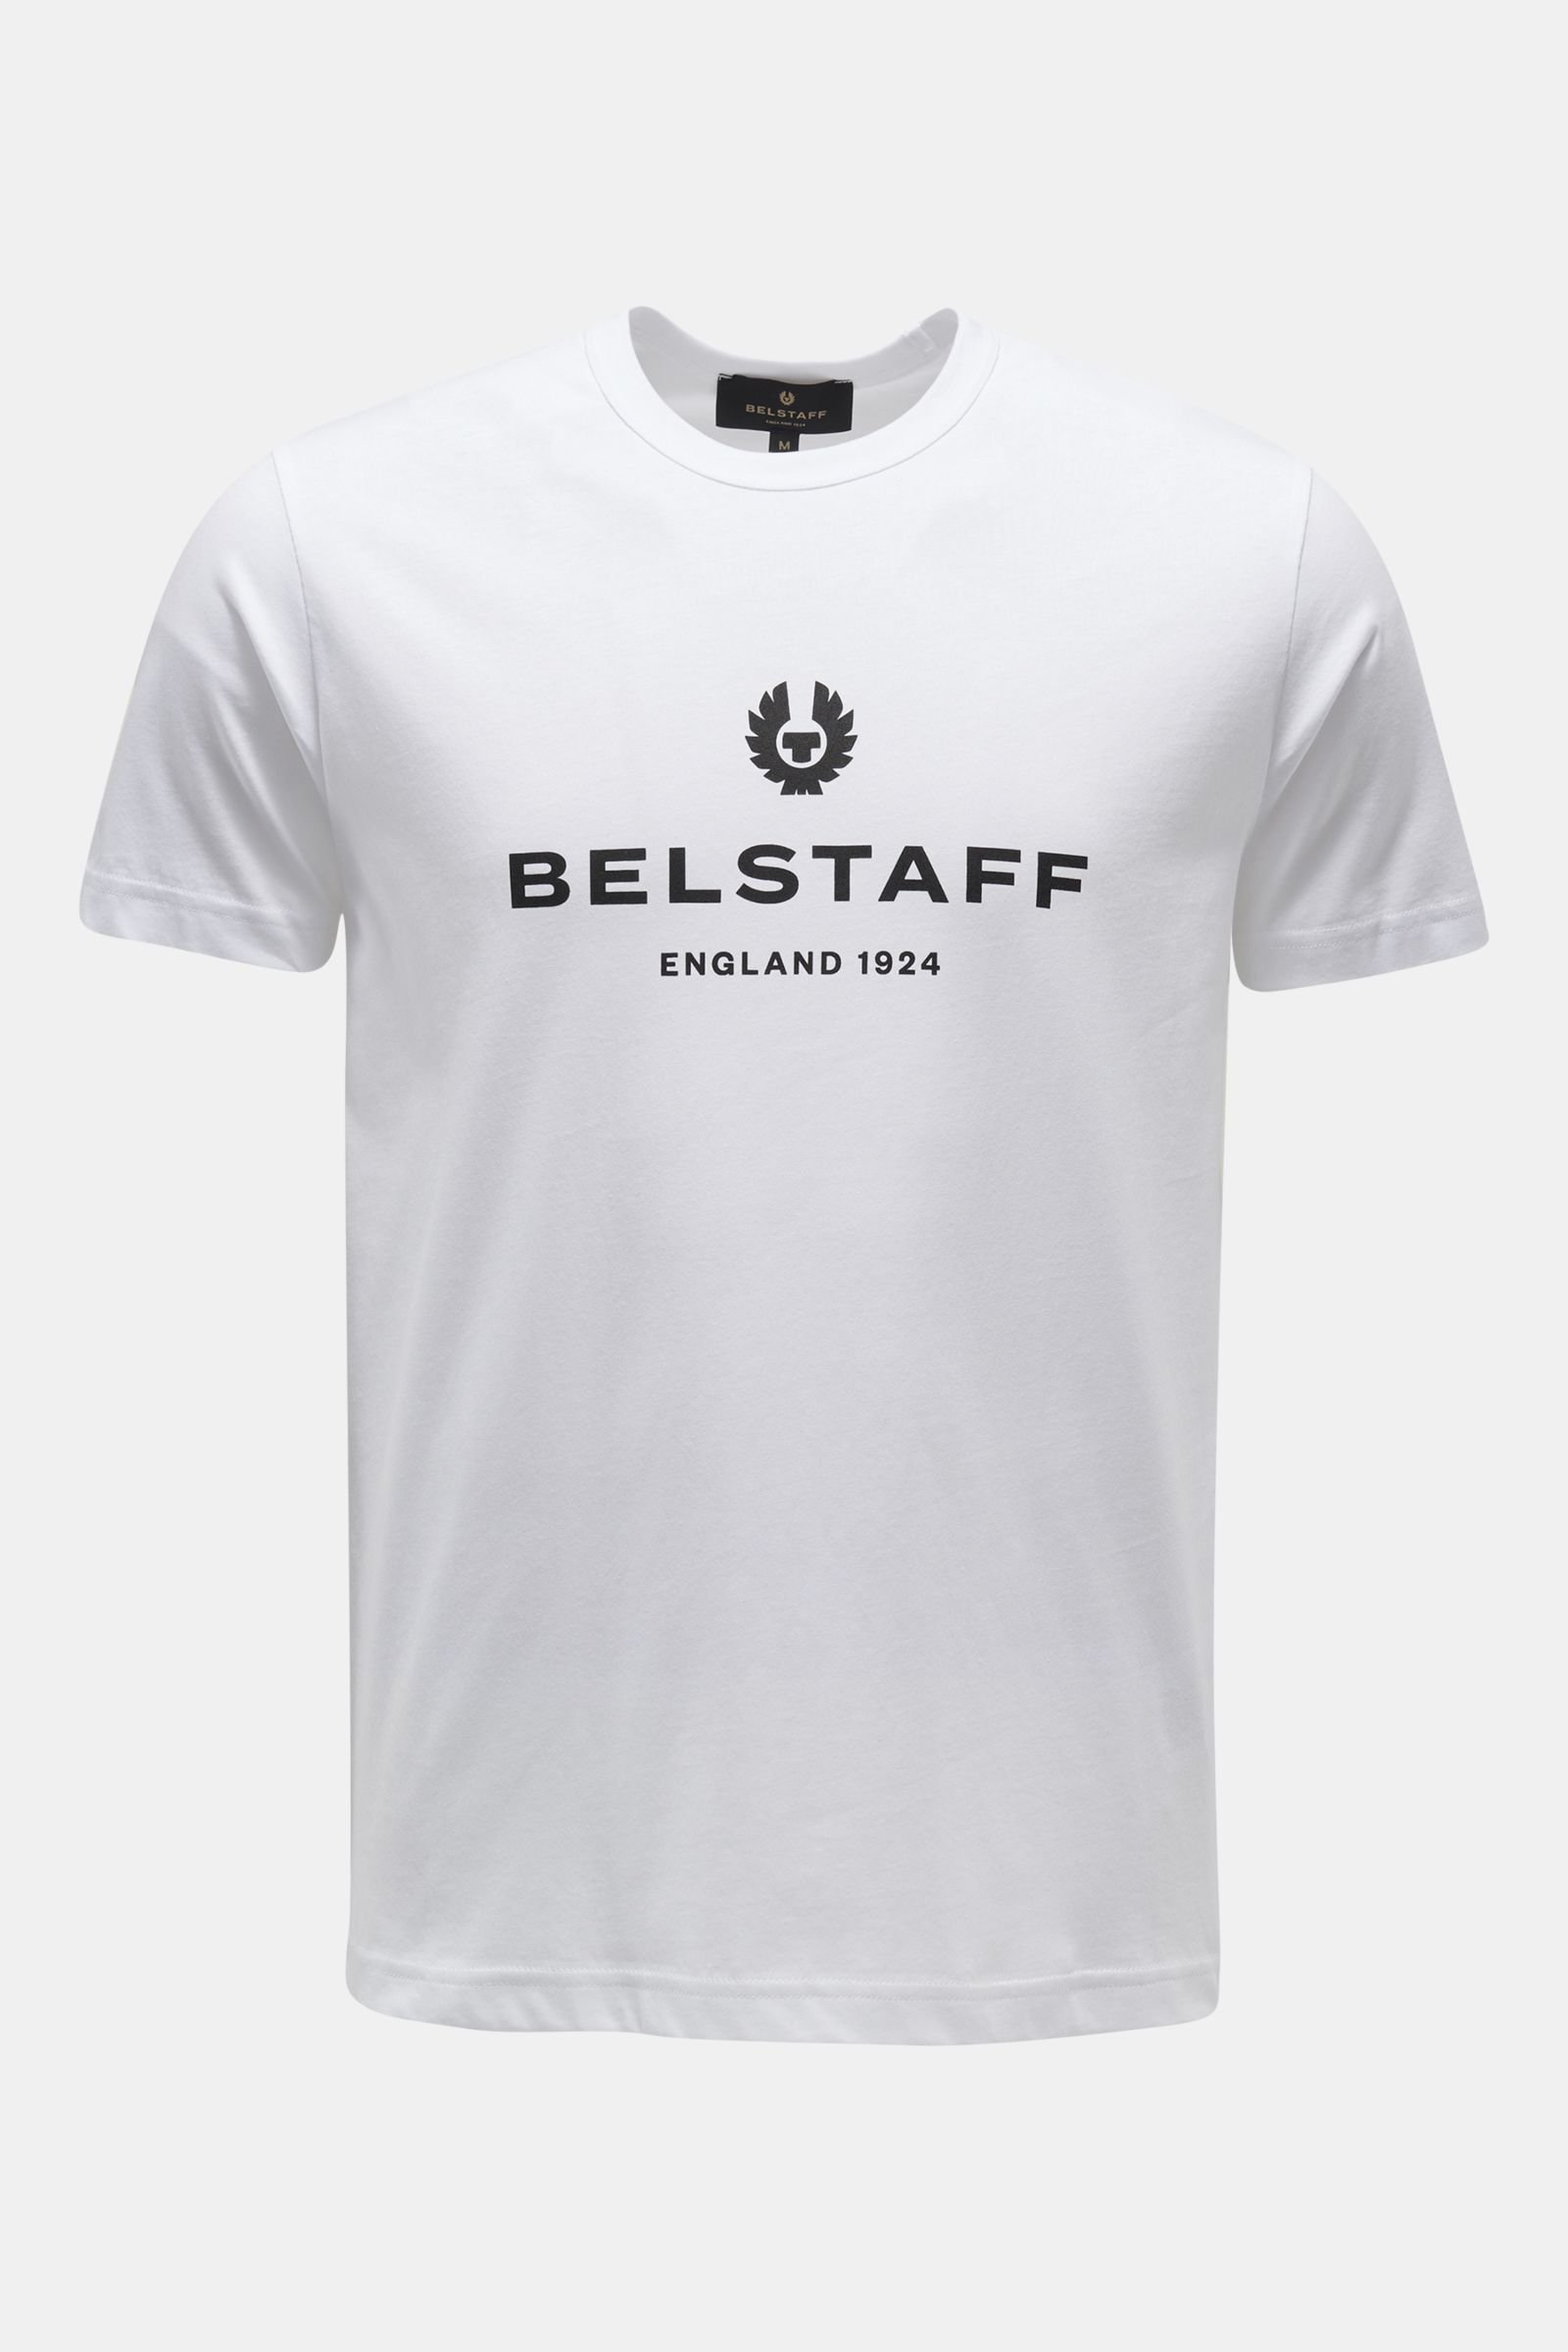 Rundhals-T-Shirt 'Belstaff 1924' weiß